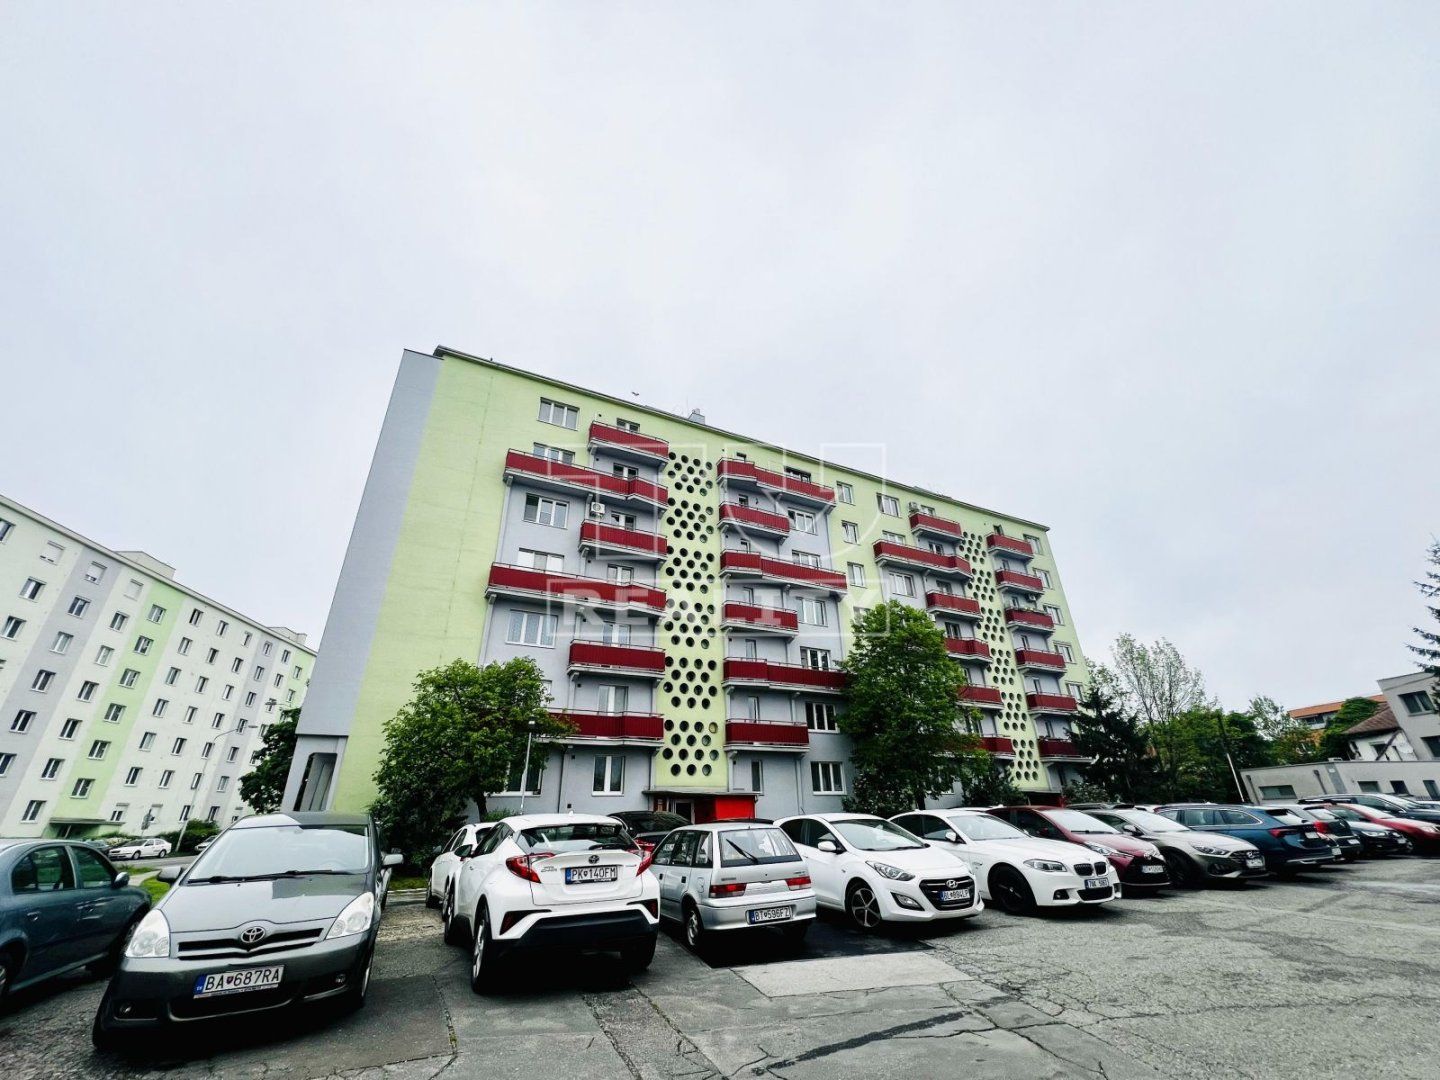 Na predaj veľký jednoizbový byt s balkónom na ulici Riazanská v Novom Meste, 43,29m2.